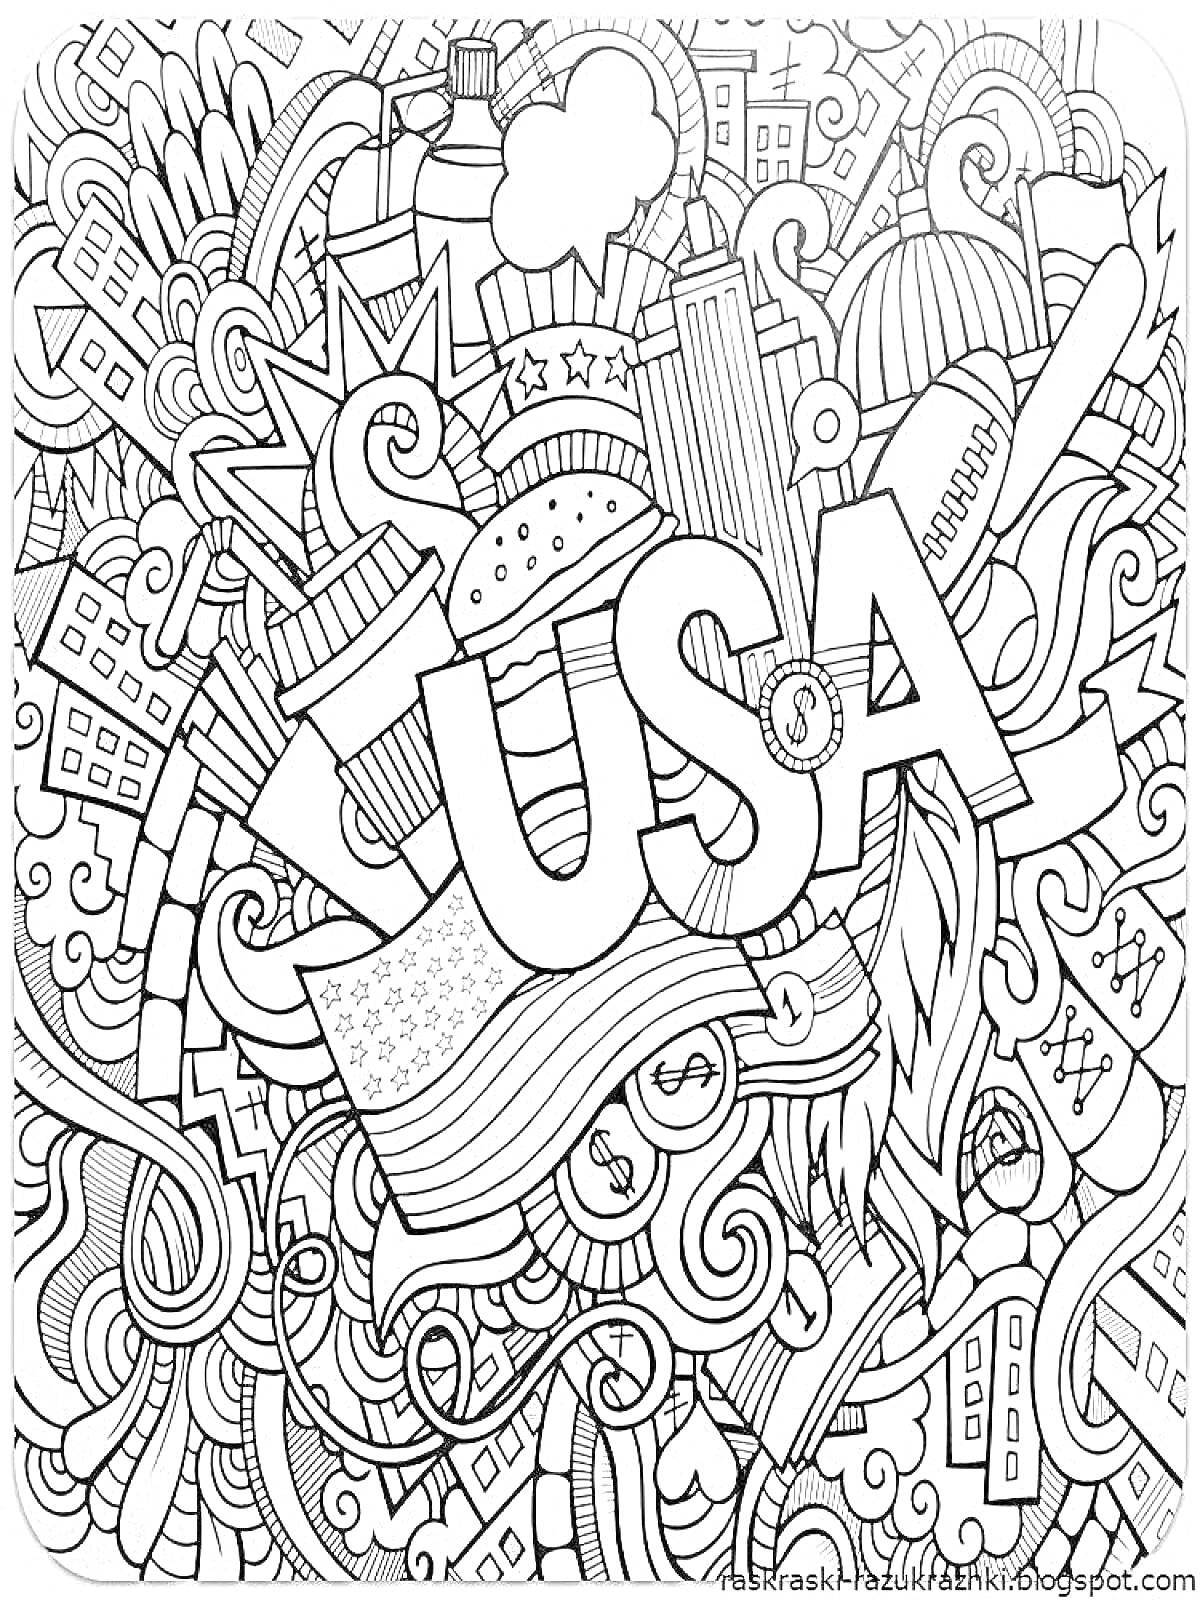 Раскраска Дудл с элементами США (USA) - города, флаг, статуя свободы, звездочки, бургеры, автомобили, облака, перья